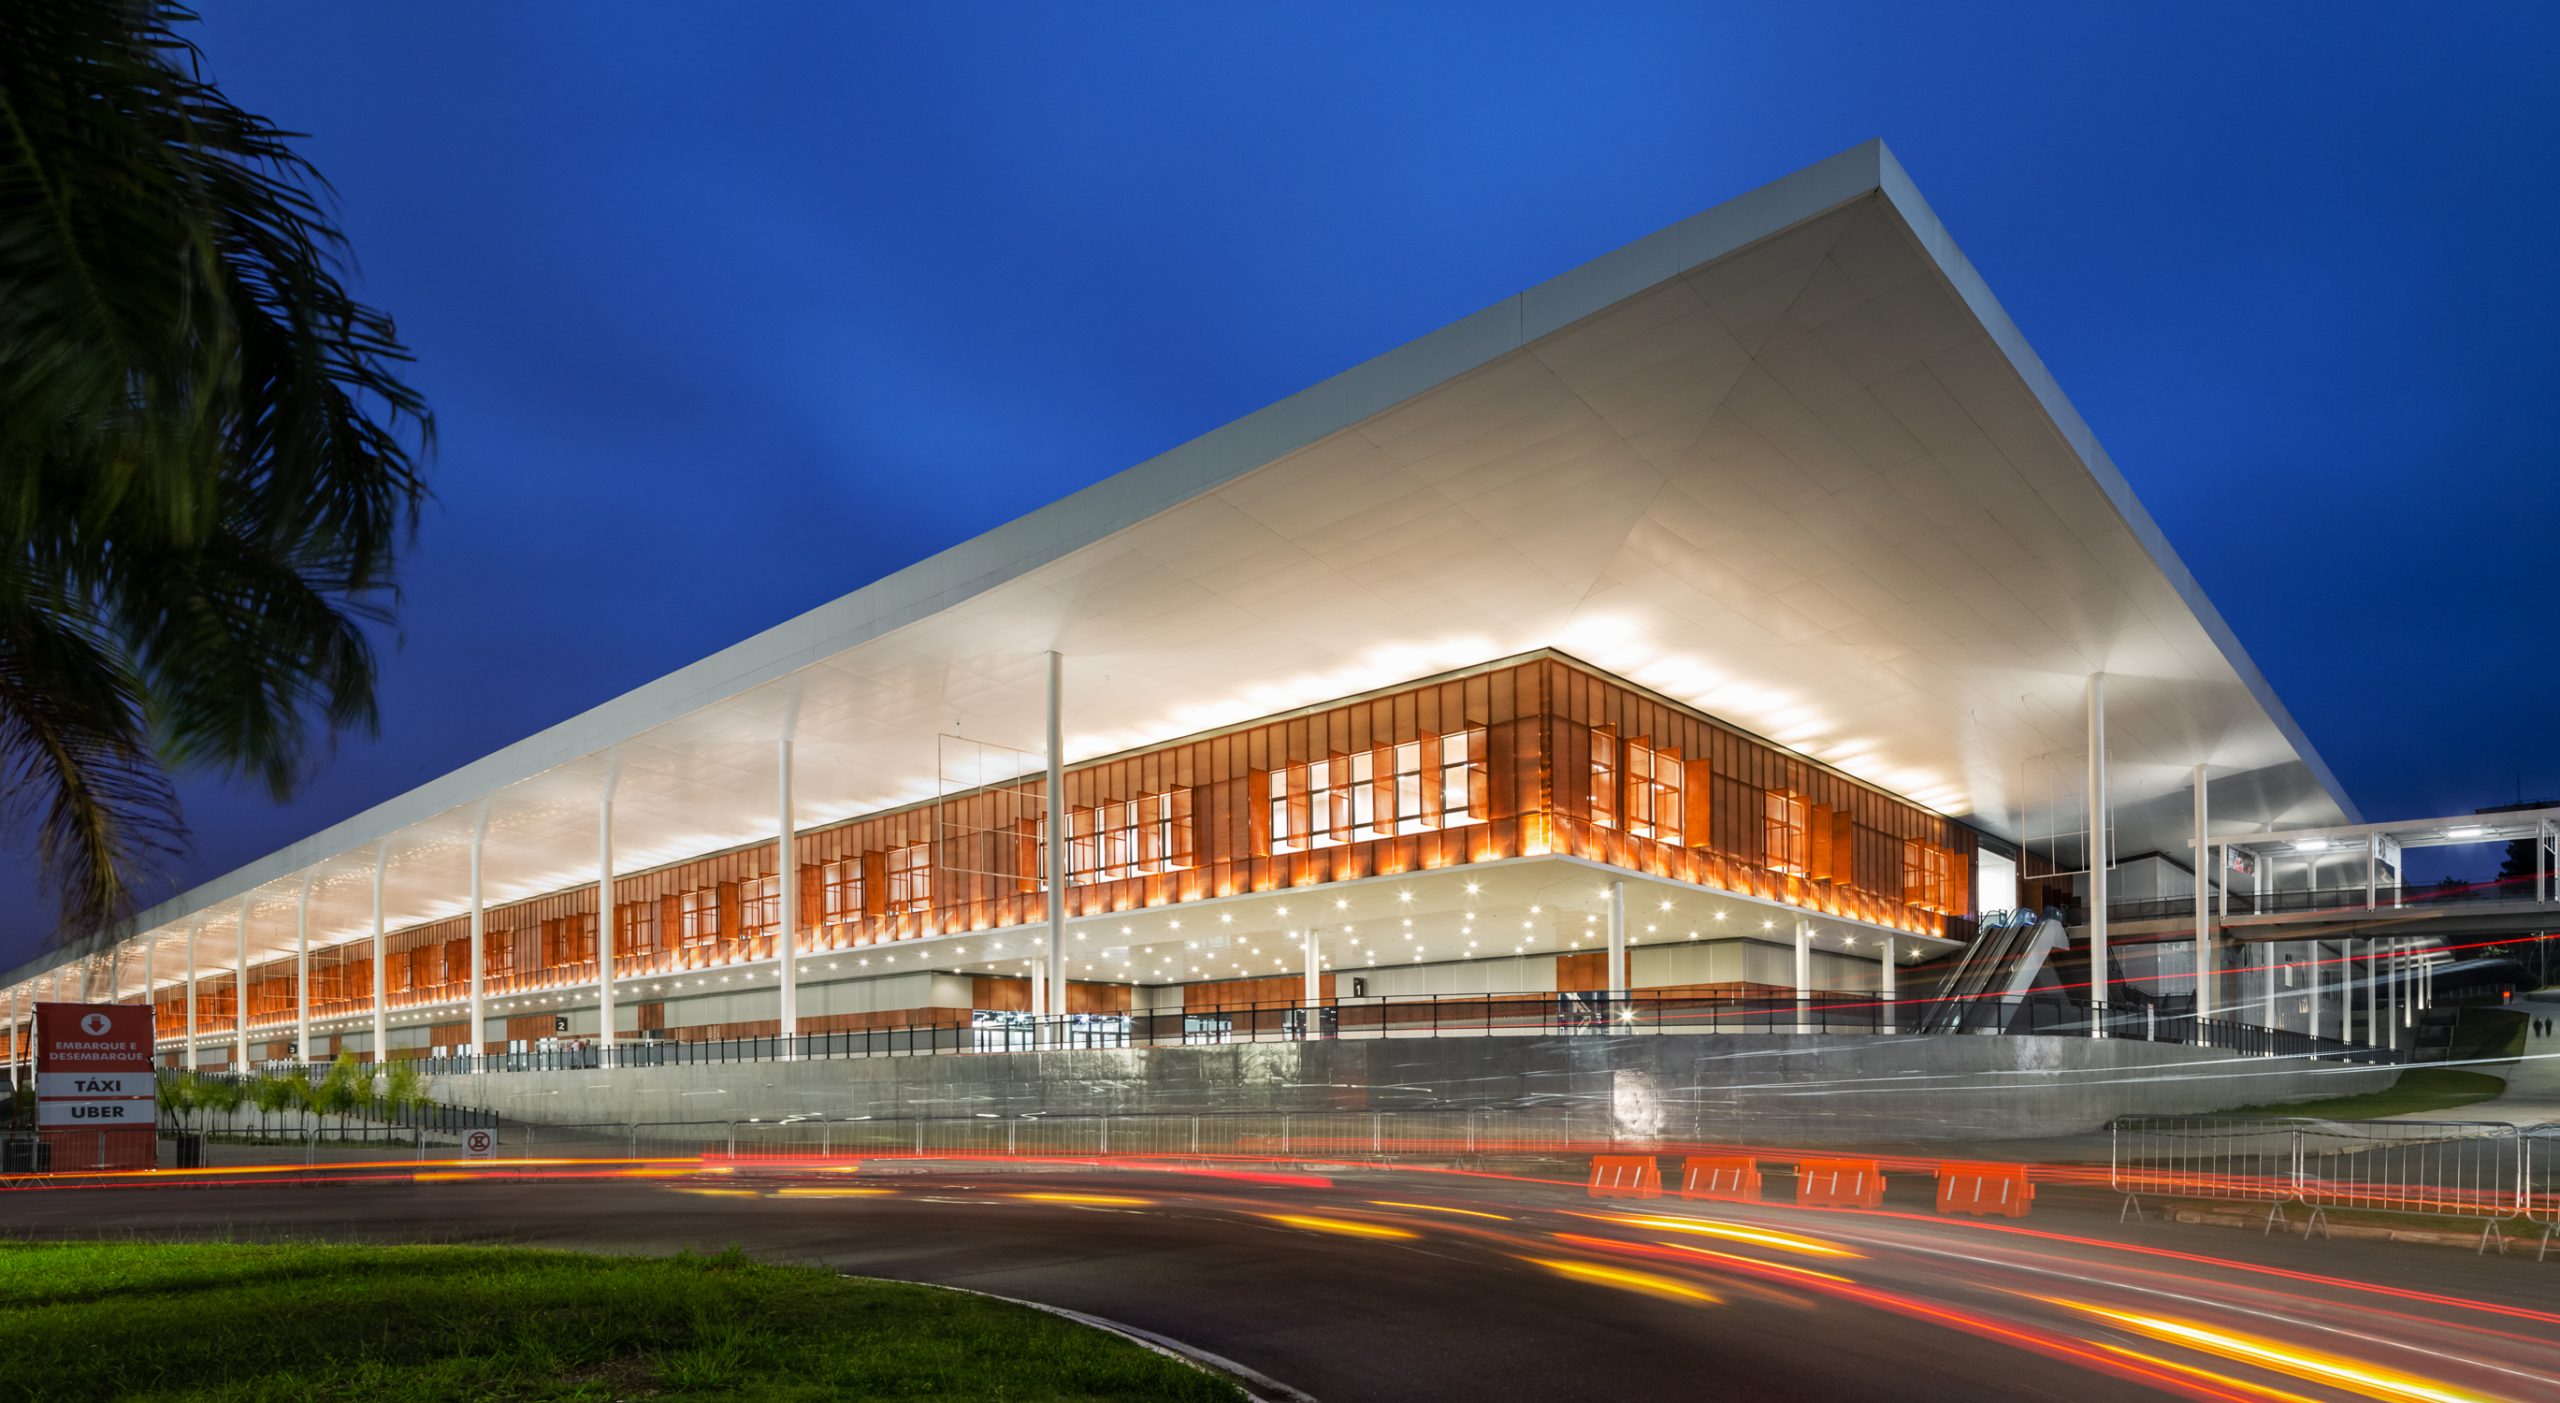 São Paulo Expo Exhibition & Convention Center